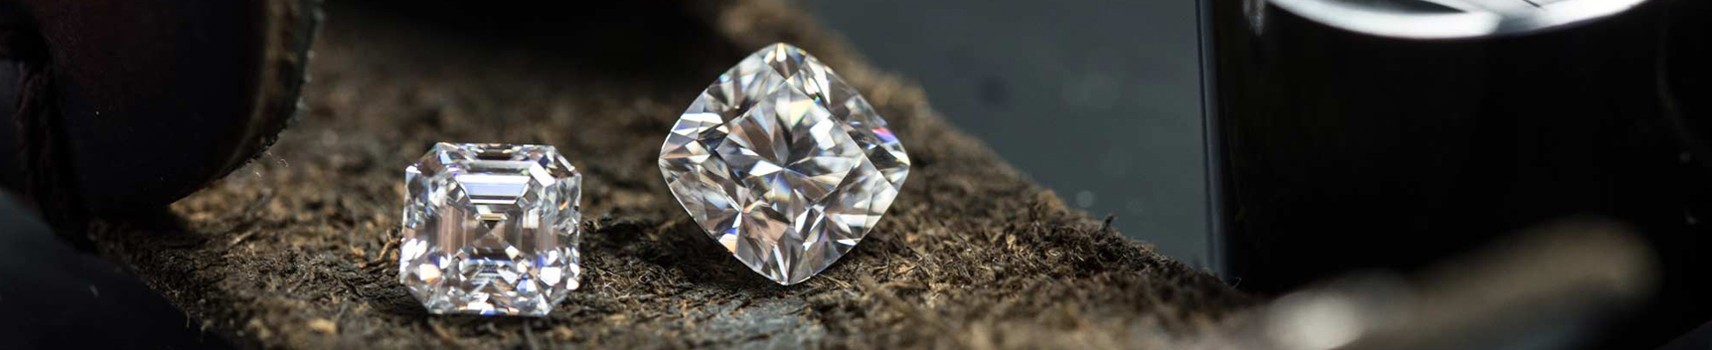 Diamantes y Piedras Preciosas Certificadas | Subastas Regents